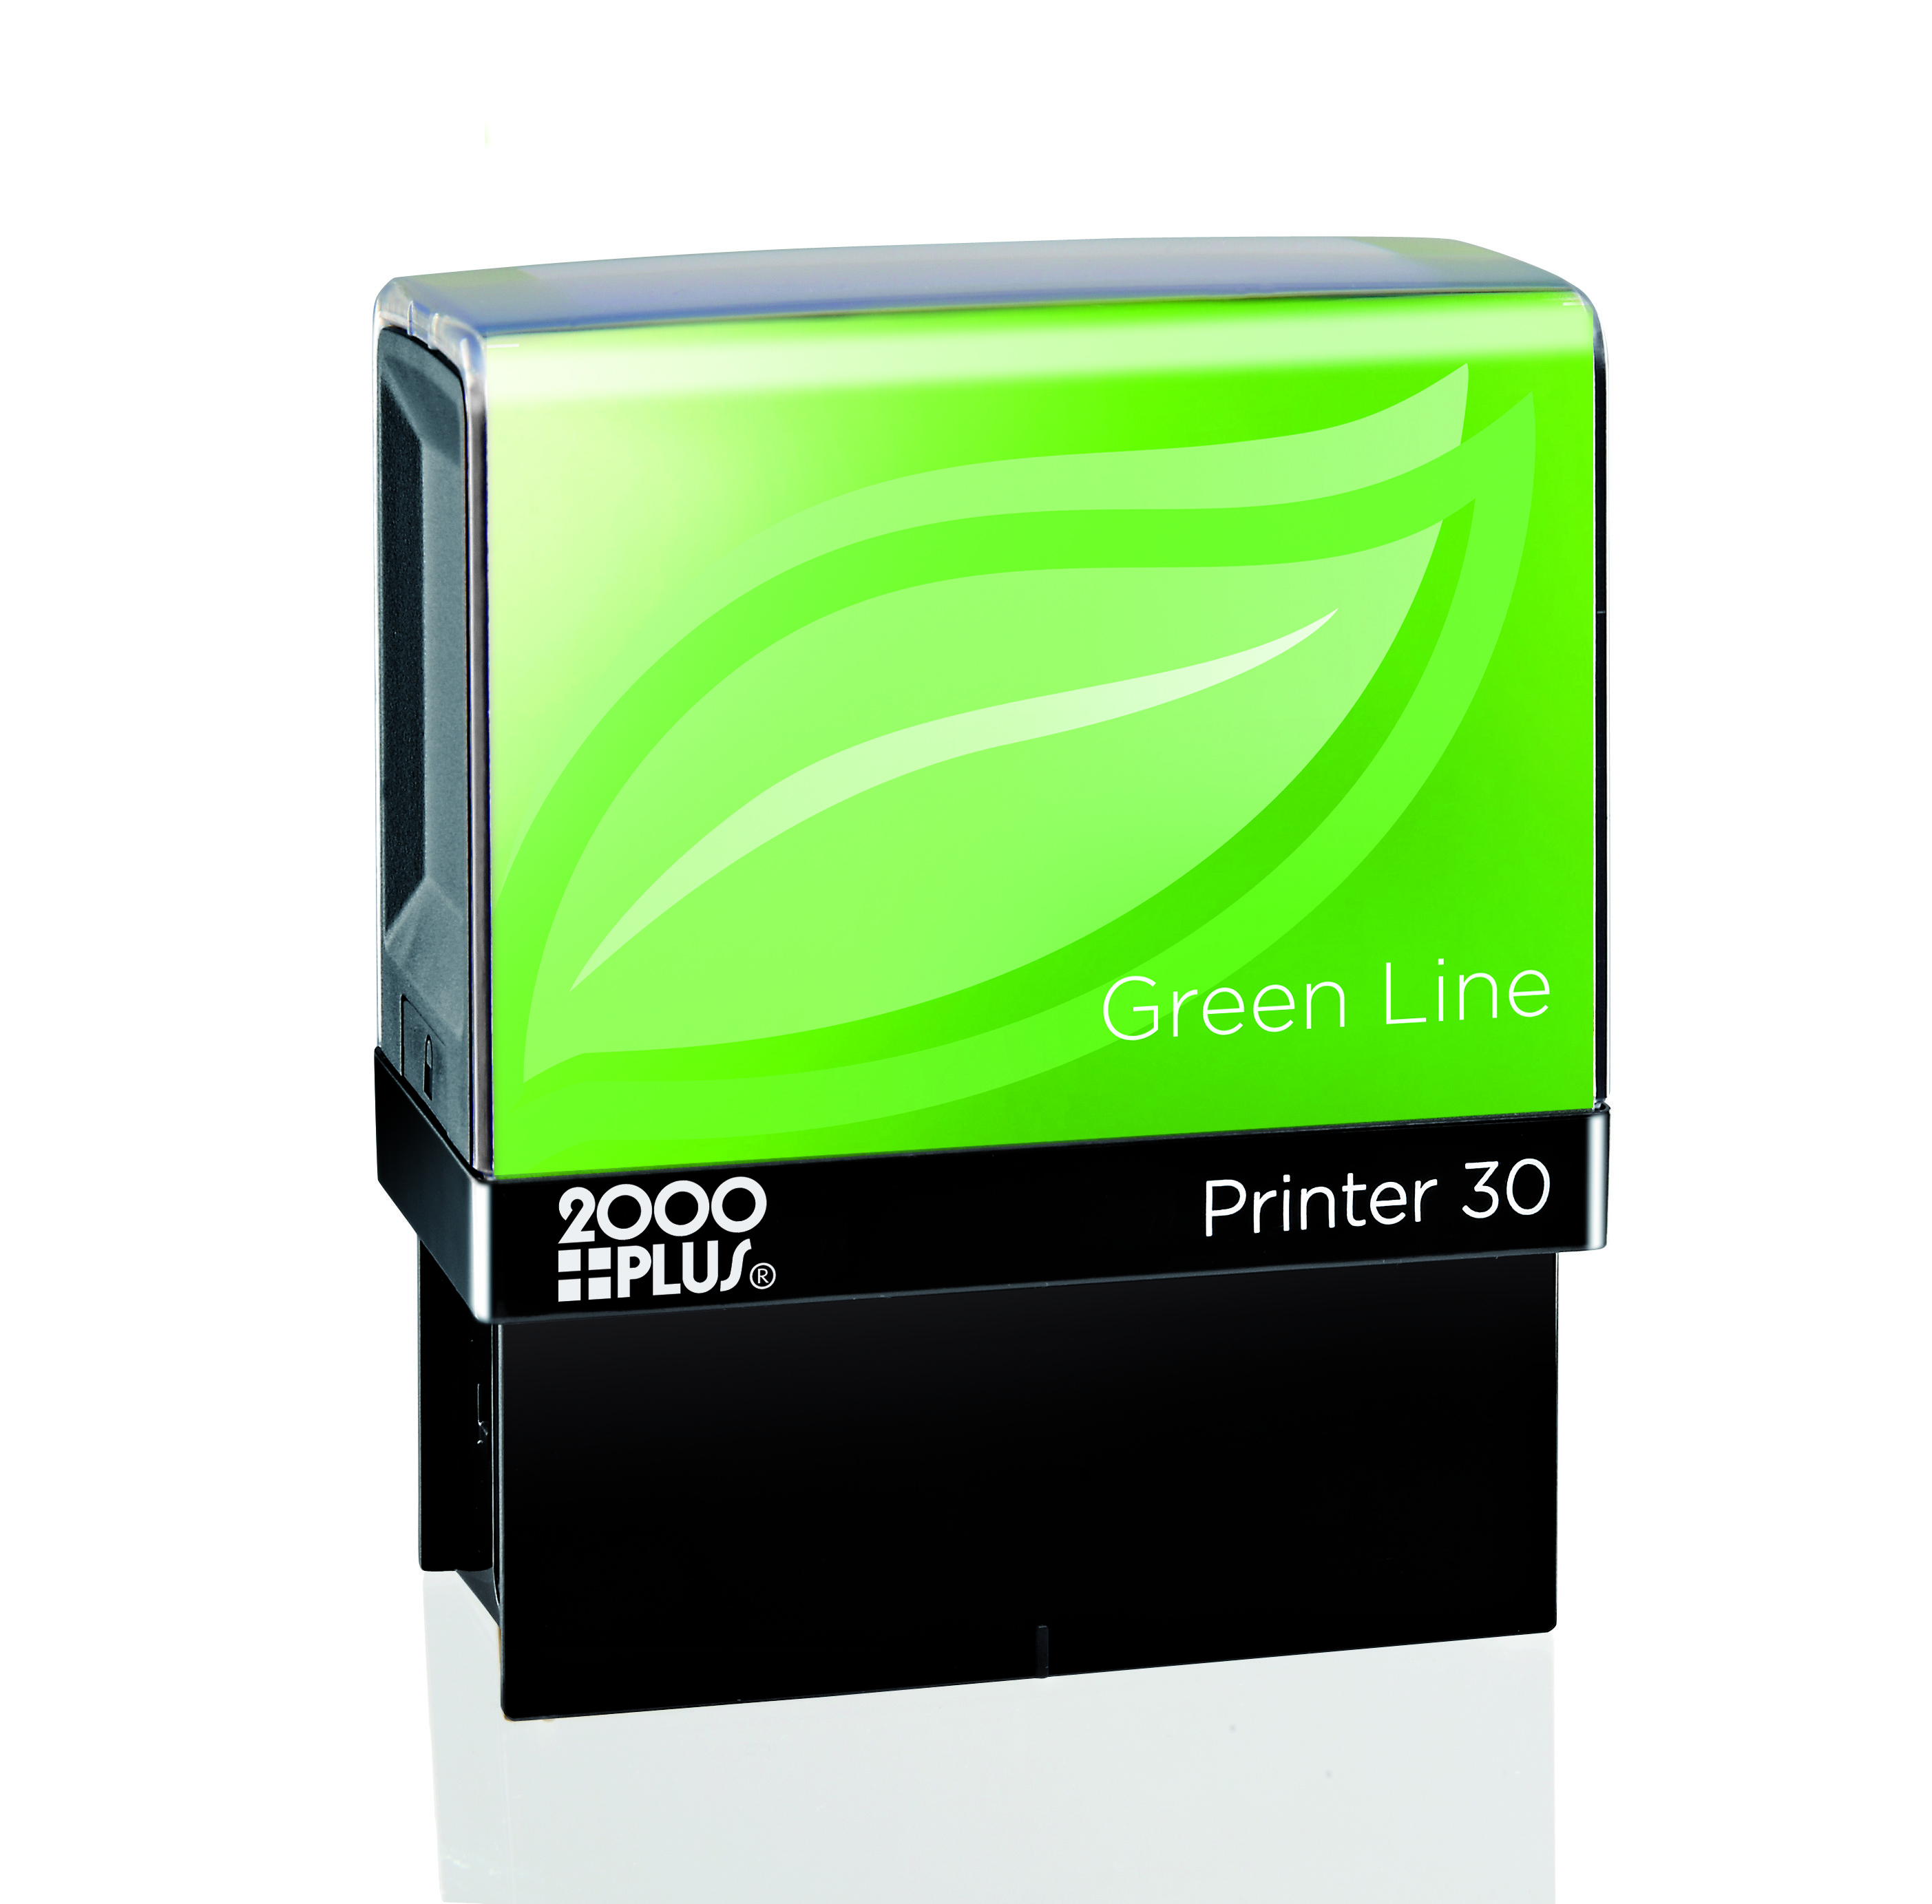 Printer 30 Greenline